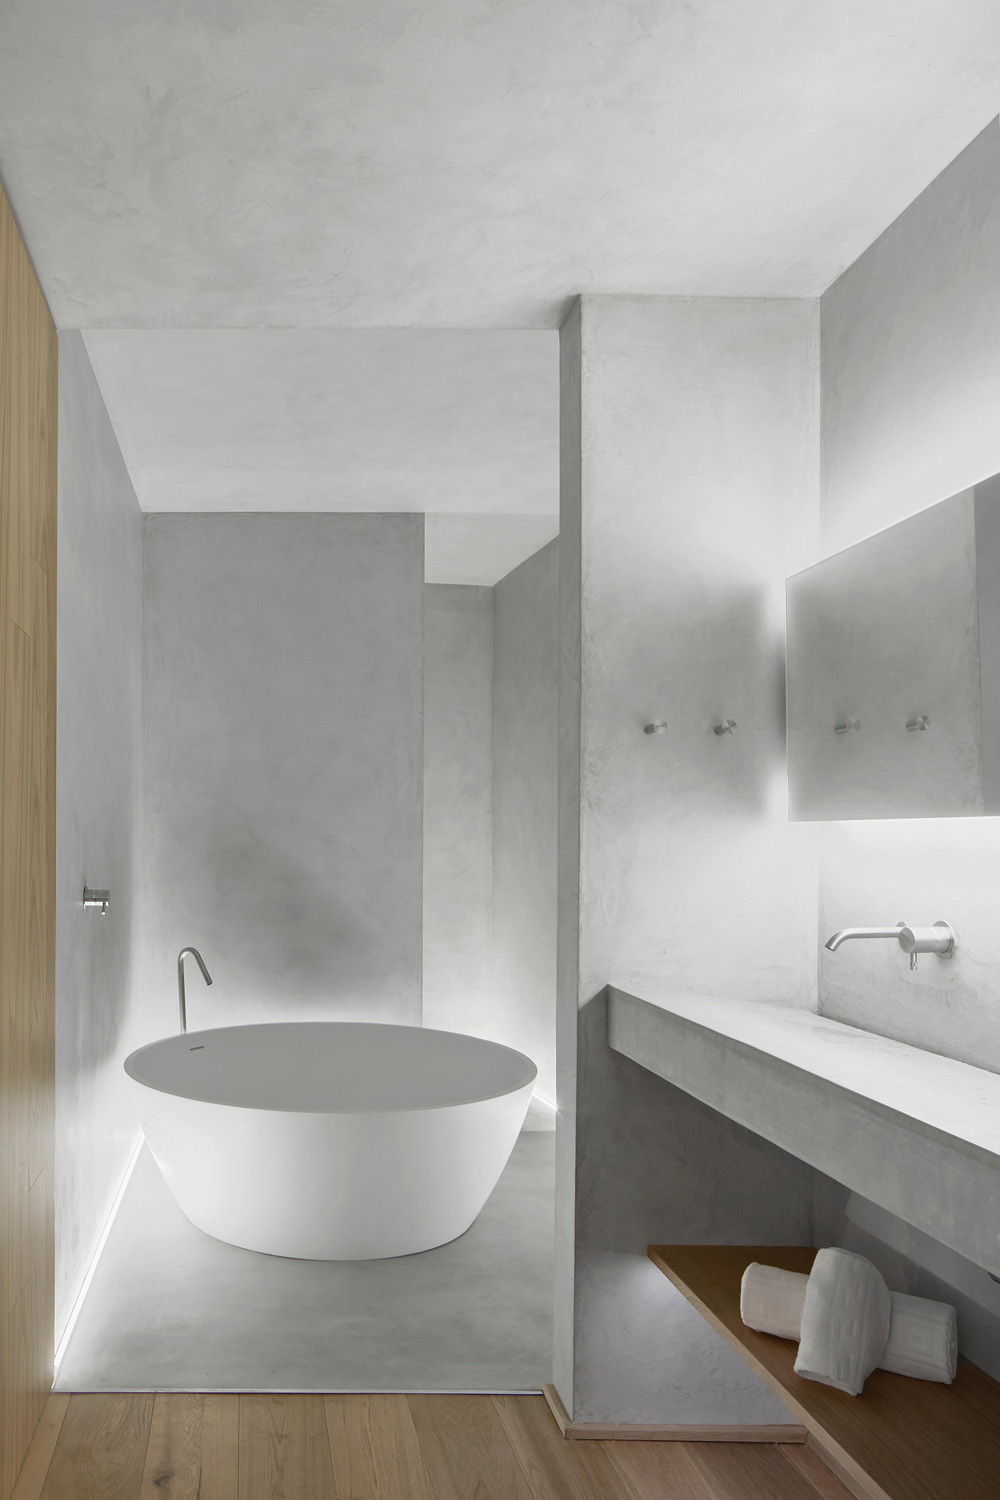 minimal and modern bathroom with bathtub